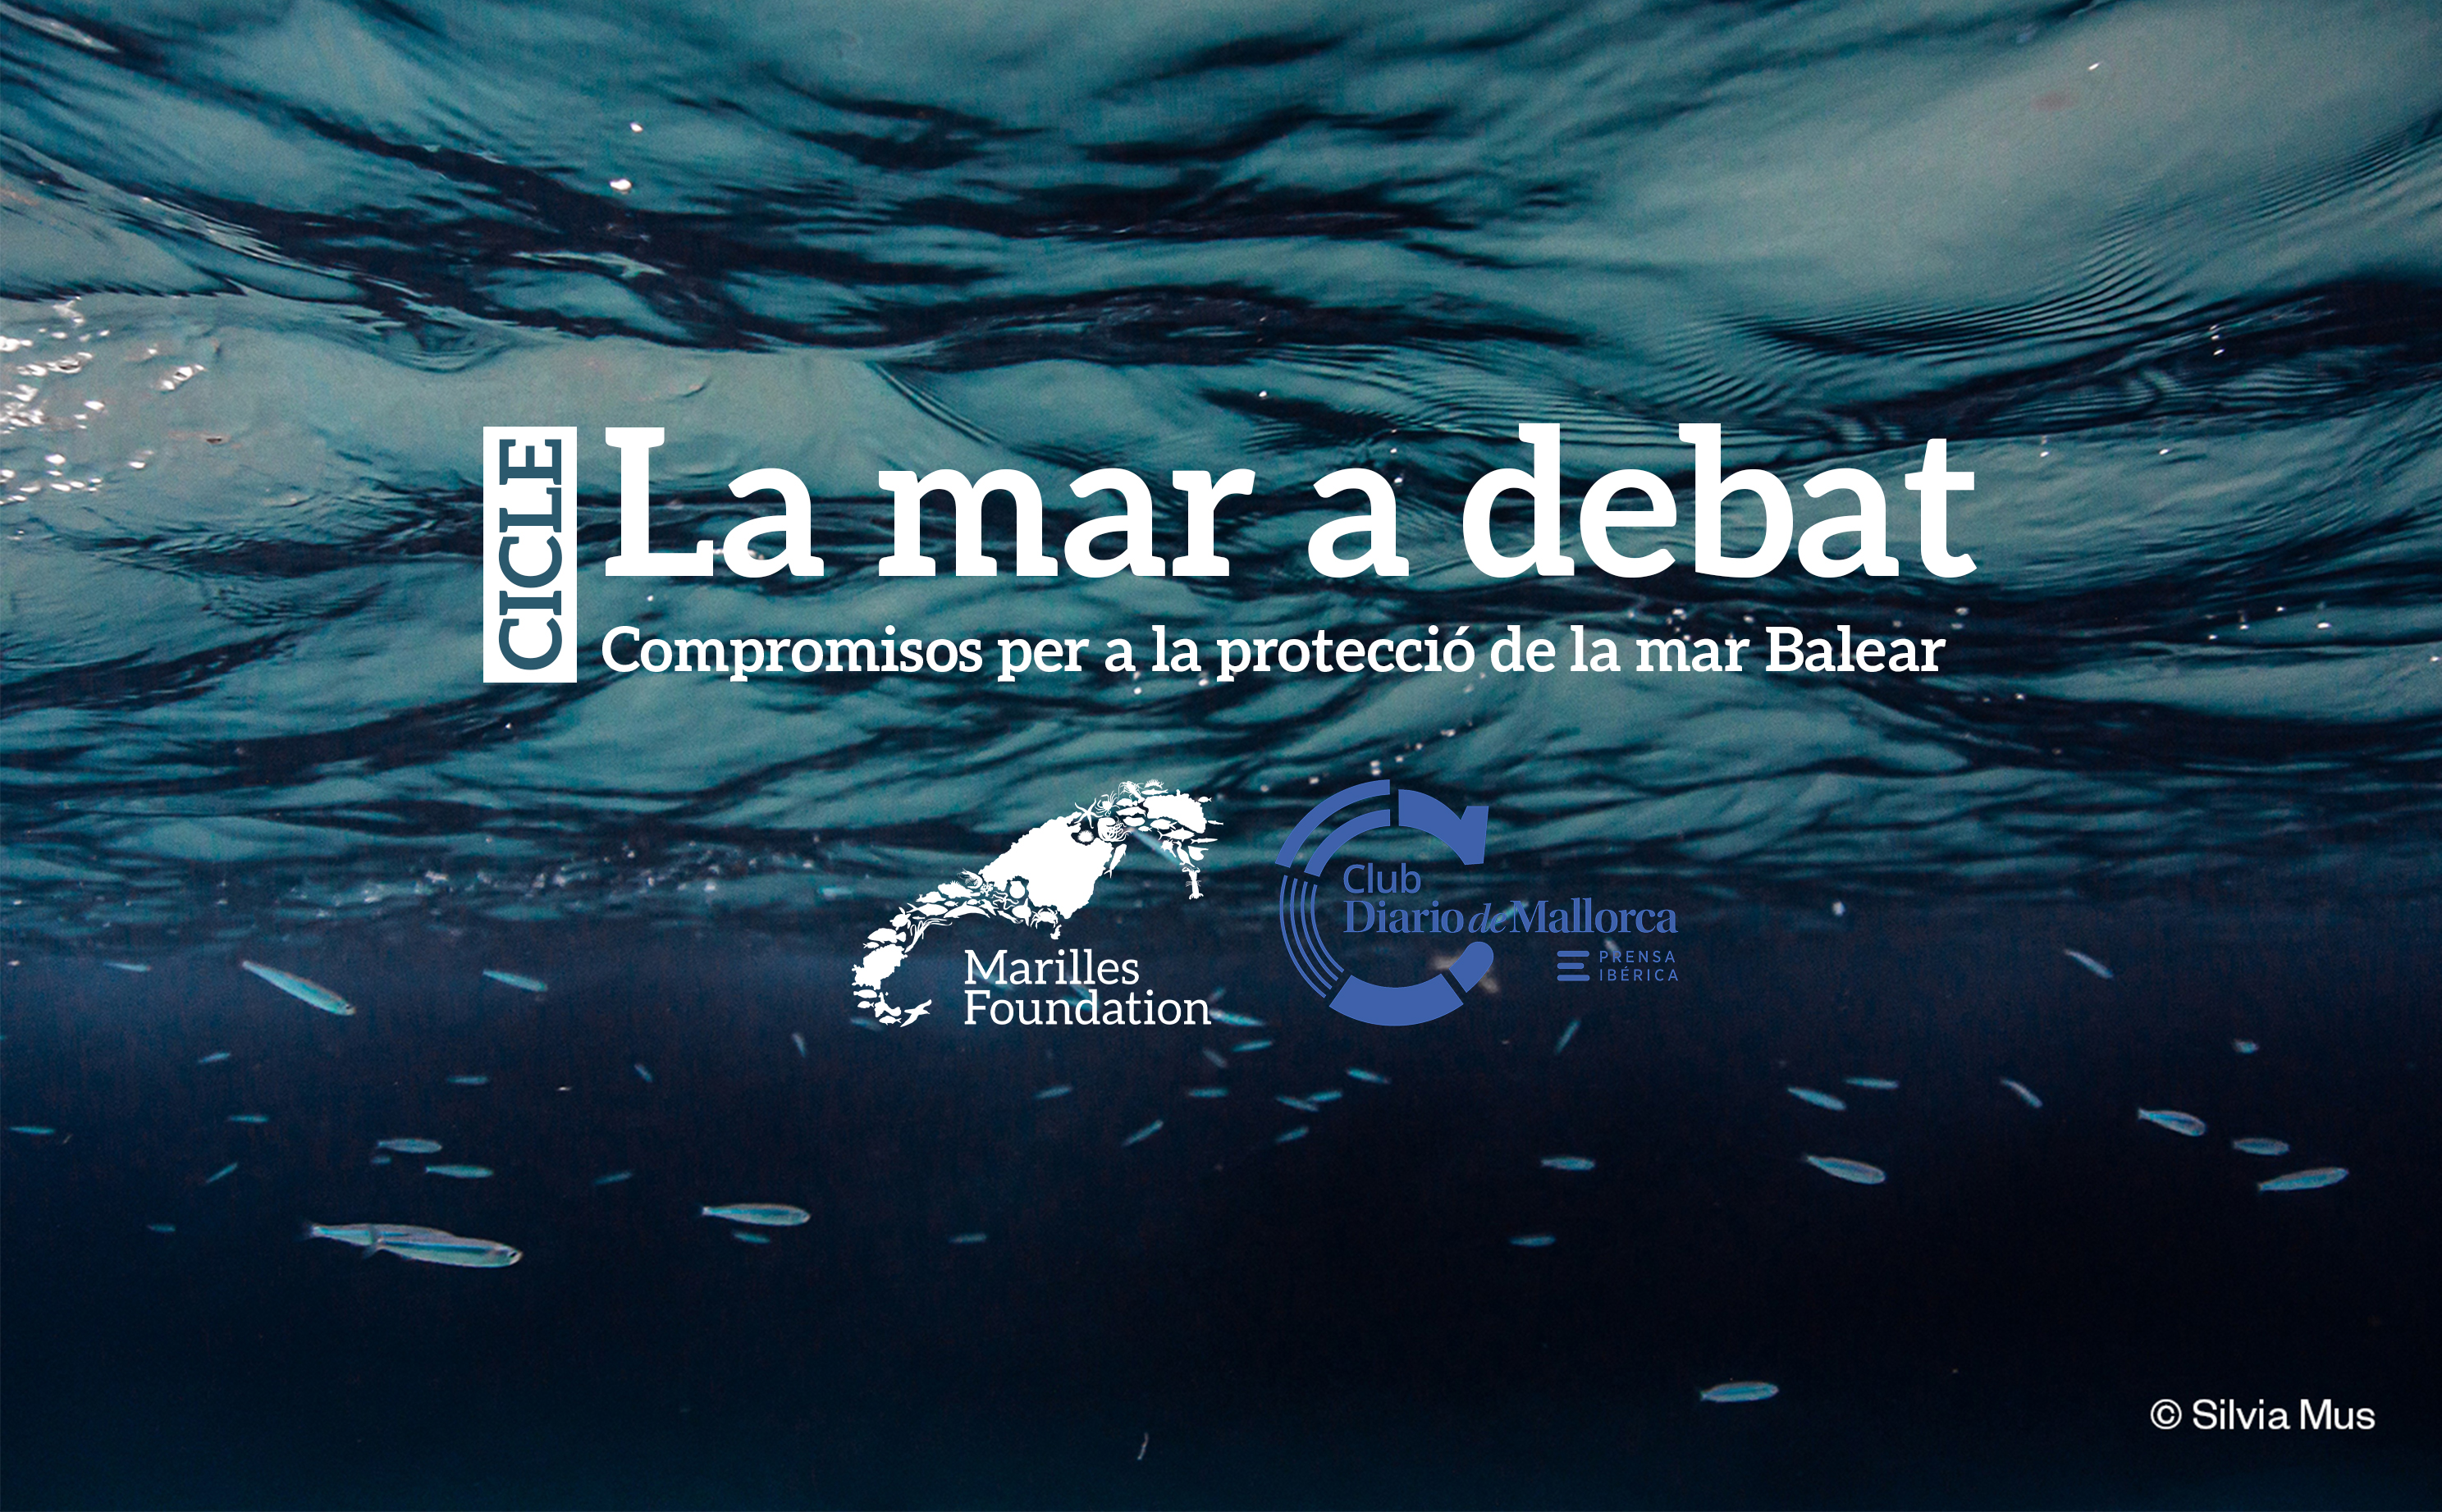 Pescadores, empresarios, políticos, clubs náuticos y ciudadanía organizada buscan soluciones para conservar el mar Balear